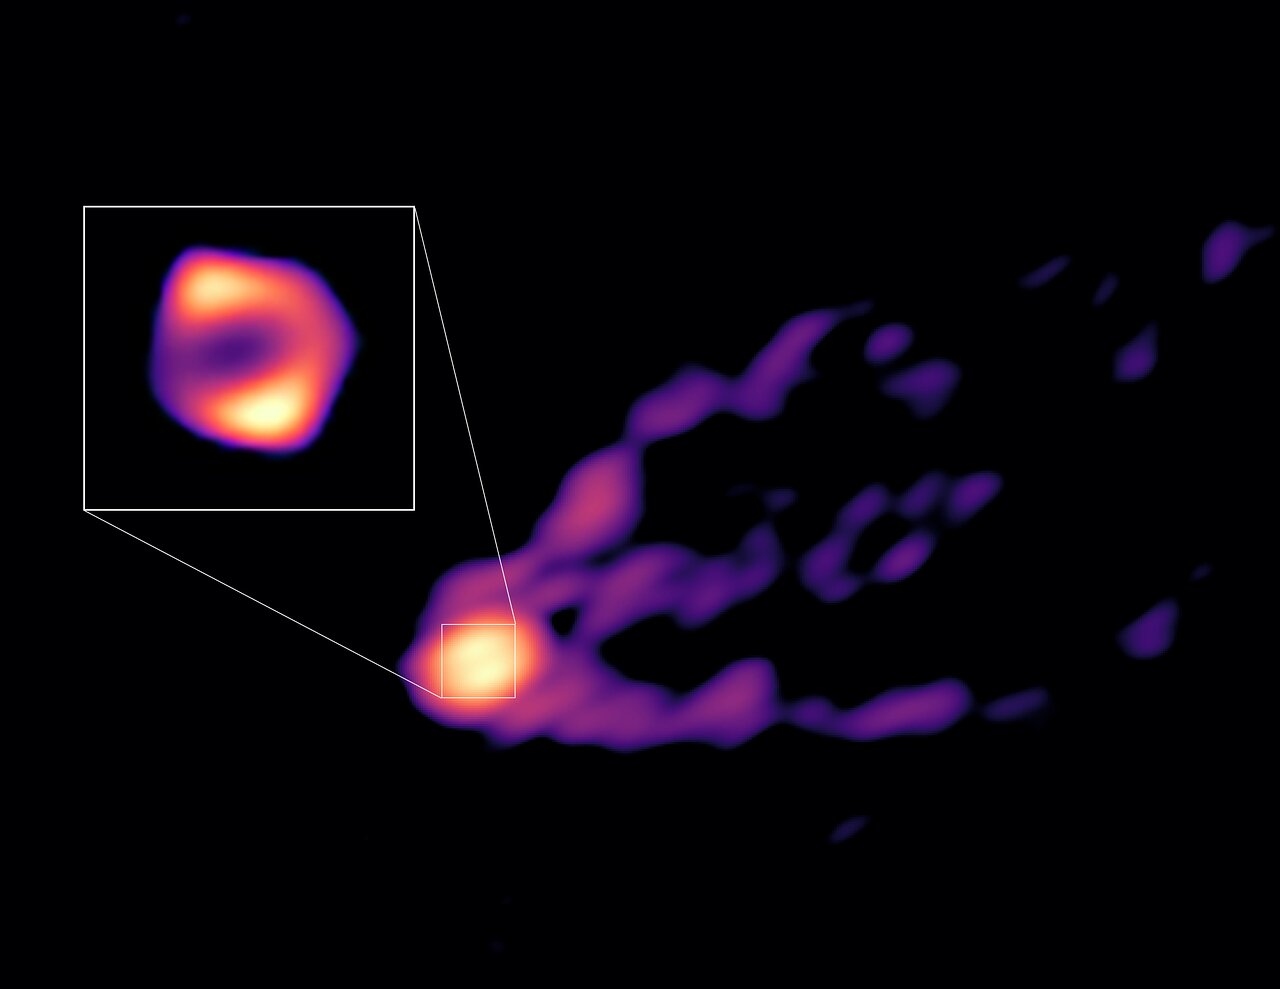 Новое изображение сверхмассивной черной дыры детально показывает поток частиц